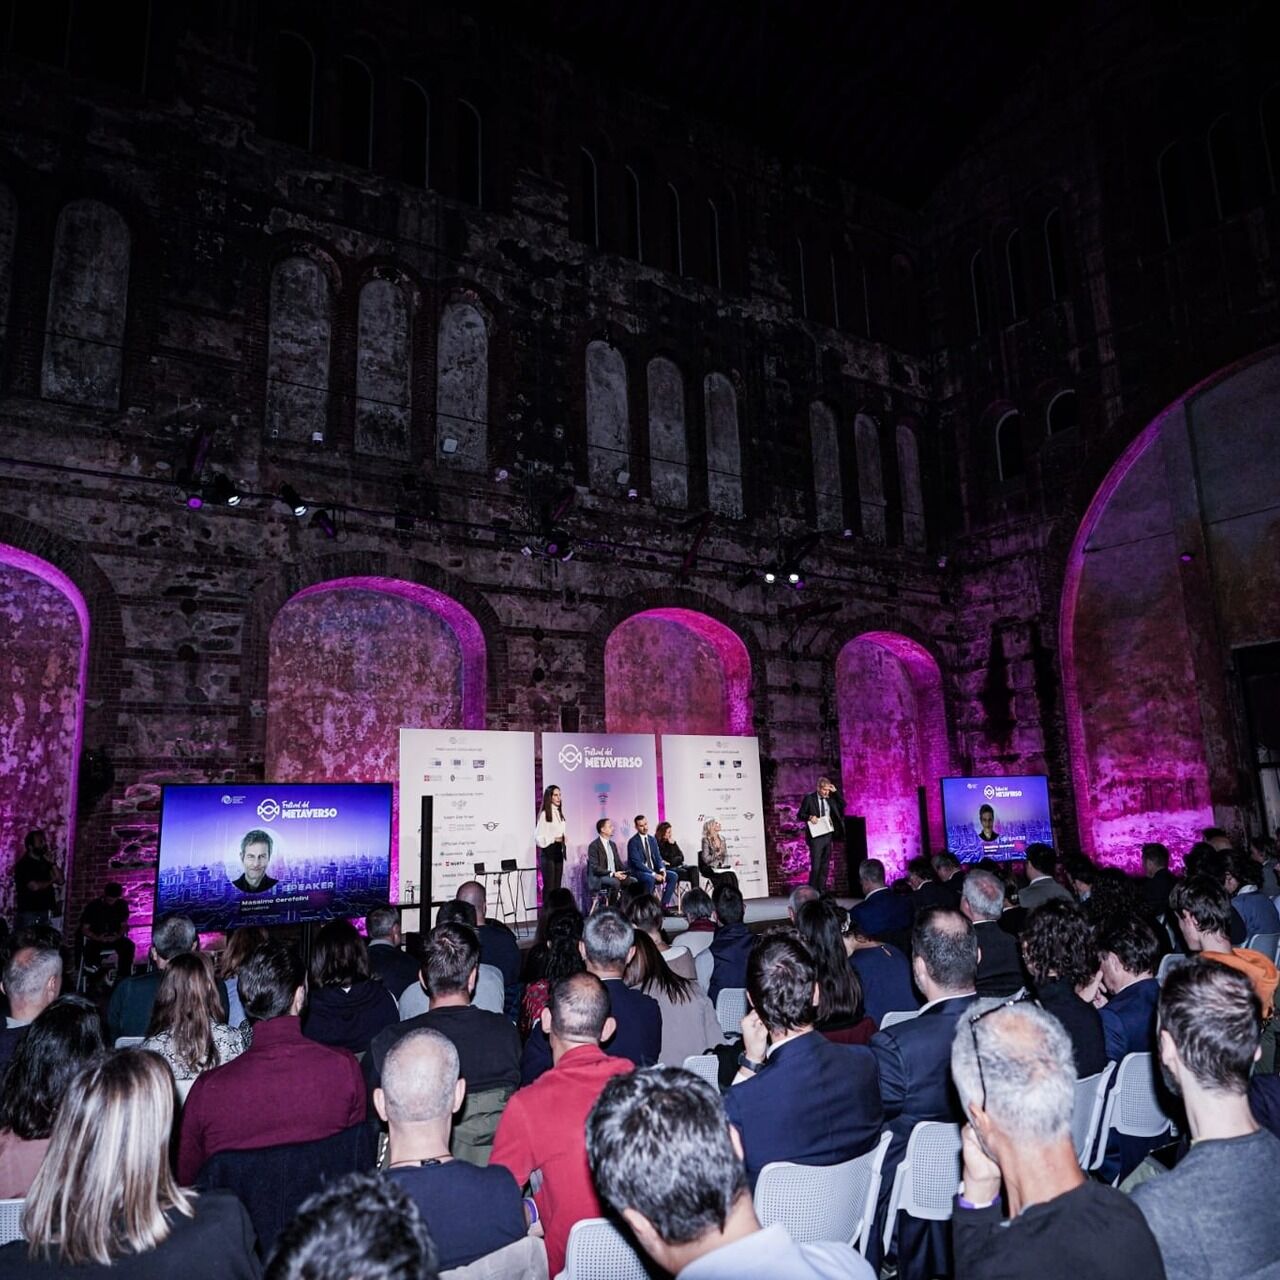 La prima edizione del Festival del Metaverso il 14 ottobre 2022 alle OGR di Torino